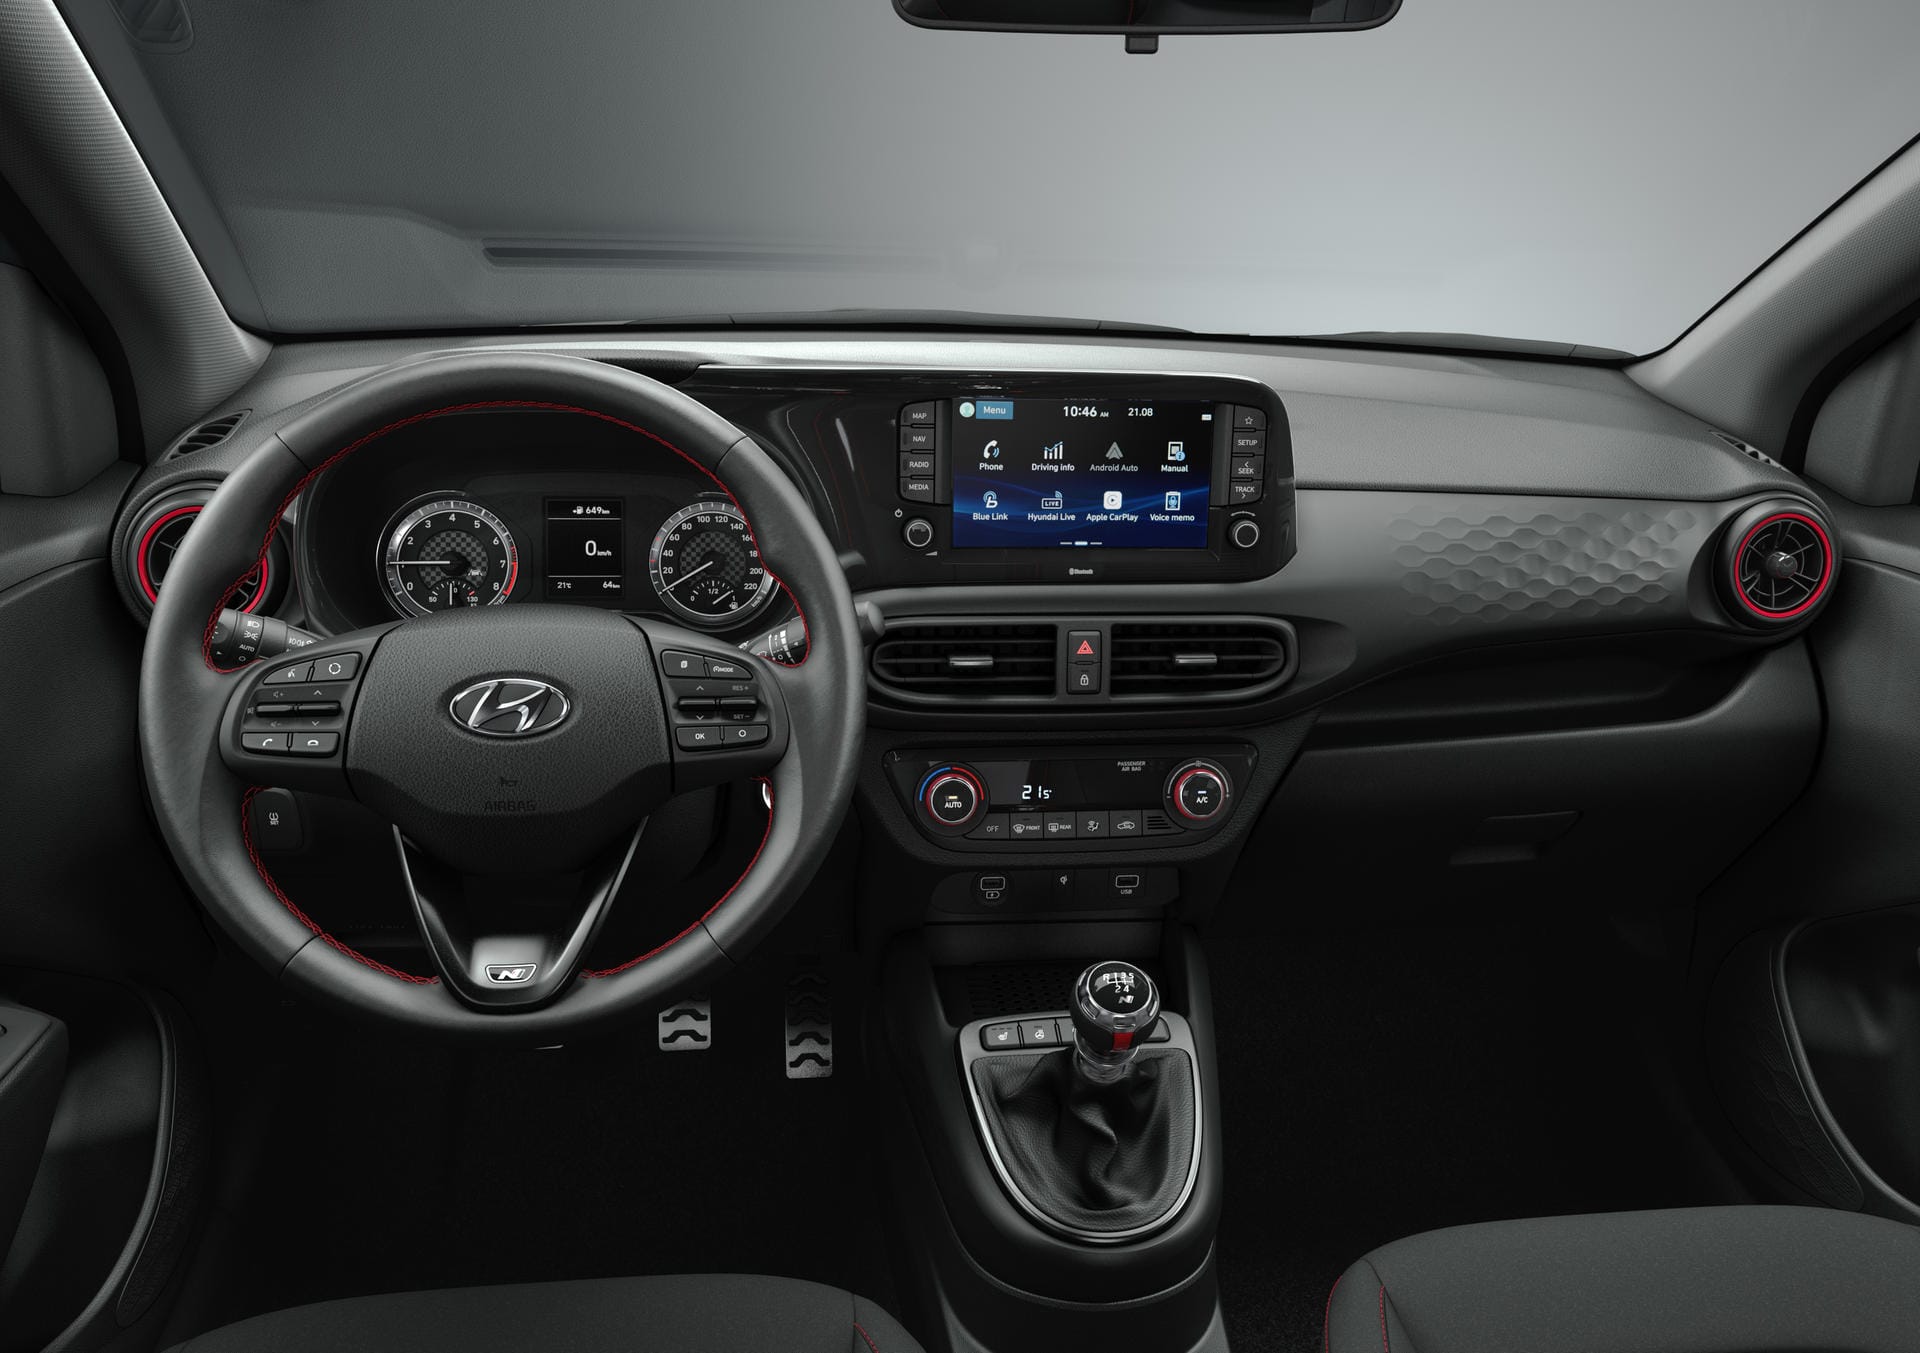 Innenraum des Hyundai i10 N:8-Zoll-Display, Smartphone-Einbindung, eigene SIM-Card, App-Steuerung – Der Hyundai i10 ist auch als sportliche N Line "always on".